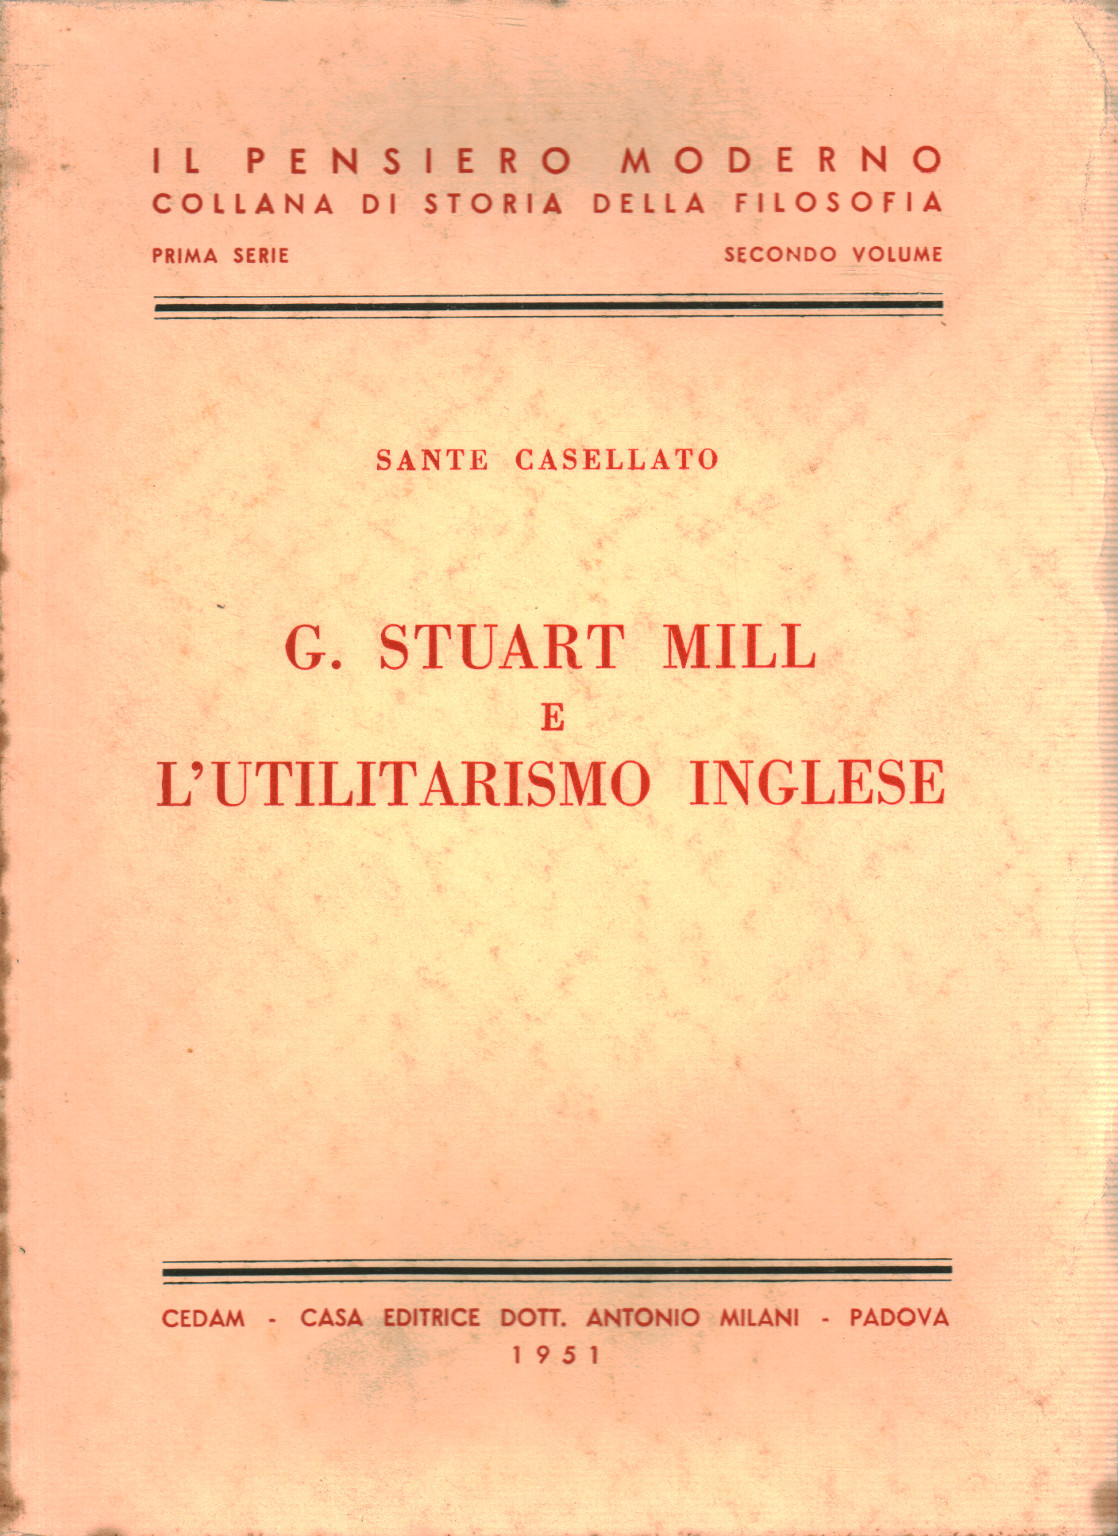 G. Stuart Mill y el utilitarismo inglés, Sante Casellato